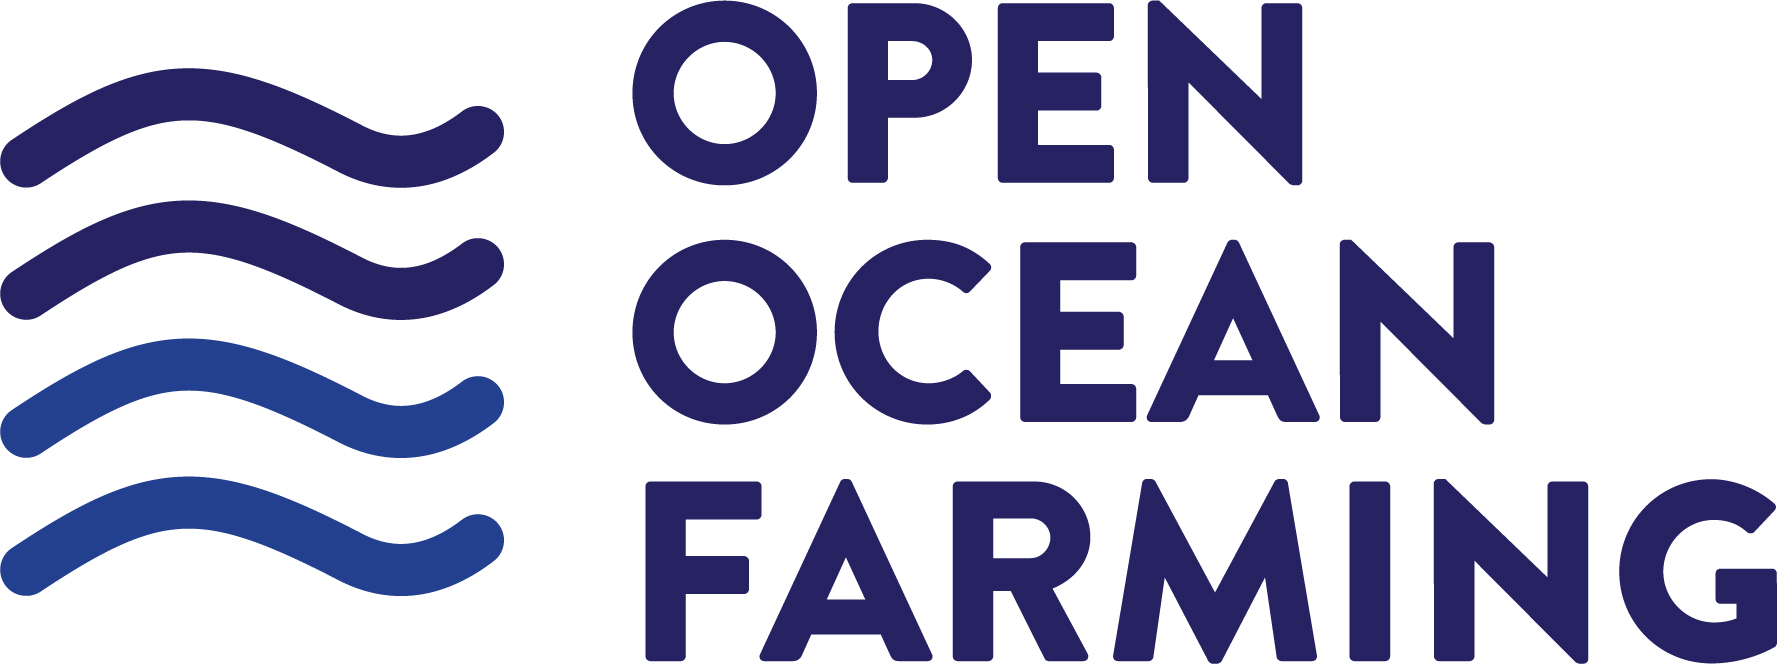 Open Ocean Farming